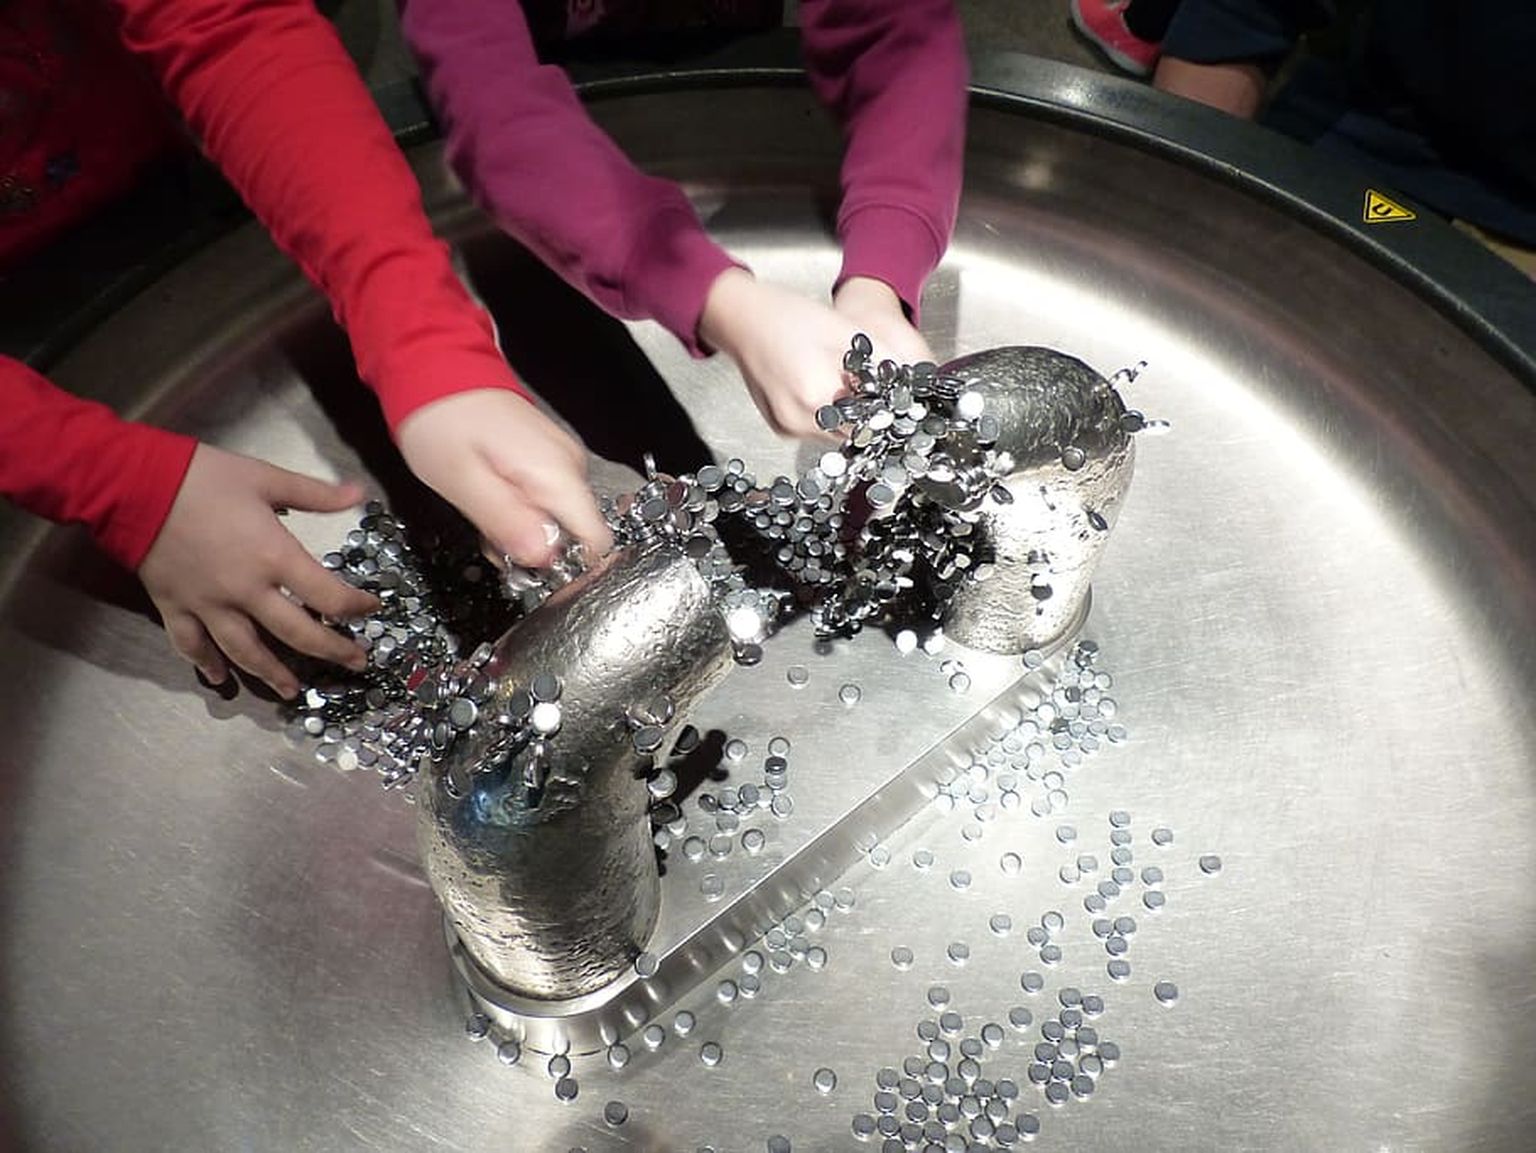 Lastele on tõeliseks magnetiks muuseumid, kus eksponaate saab katsuda ja nendega eksperimenteerida. Pildil katsetavadki lapsed seda, kuidas magneetuvad metallseibid «kleepuvad» püsimagneti poolustele.